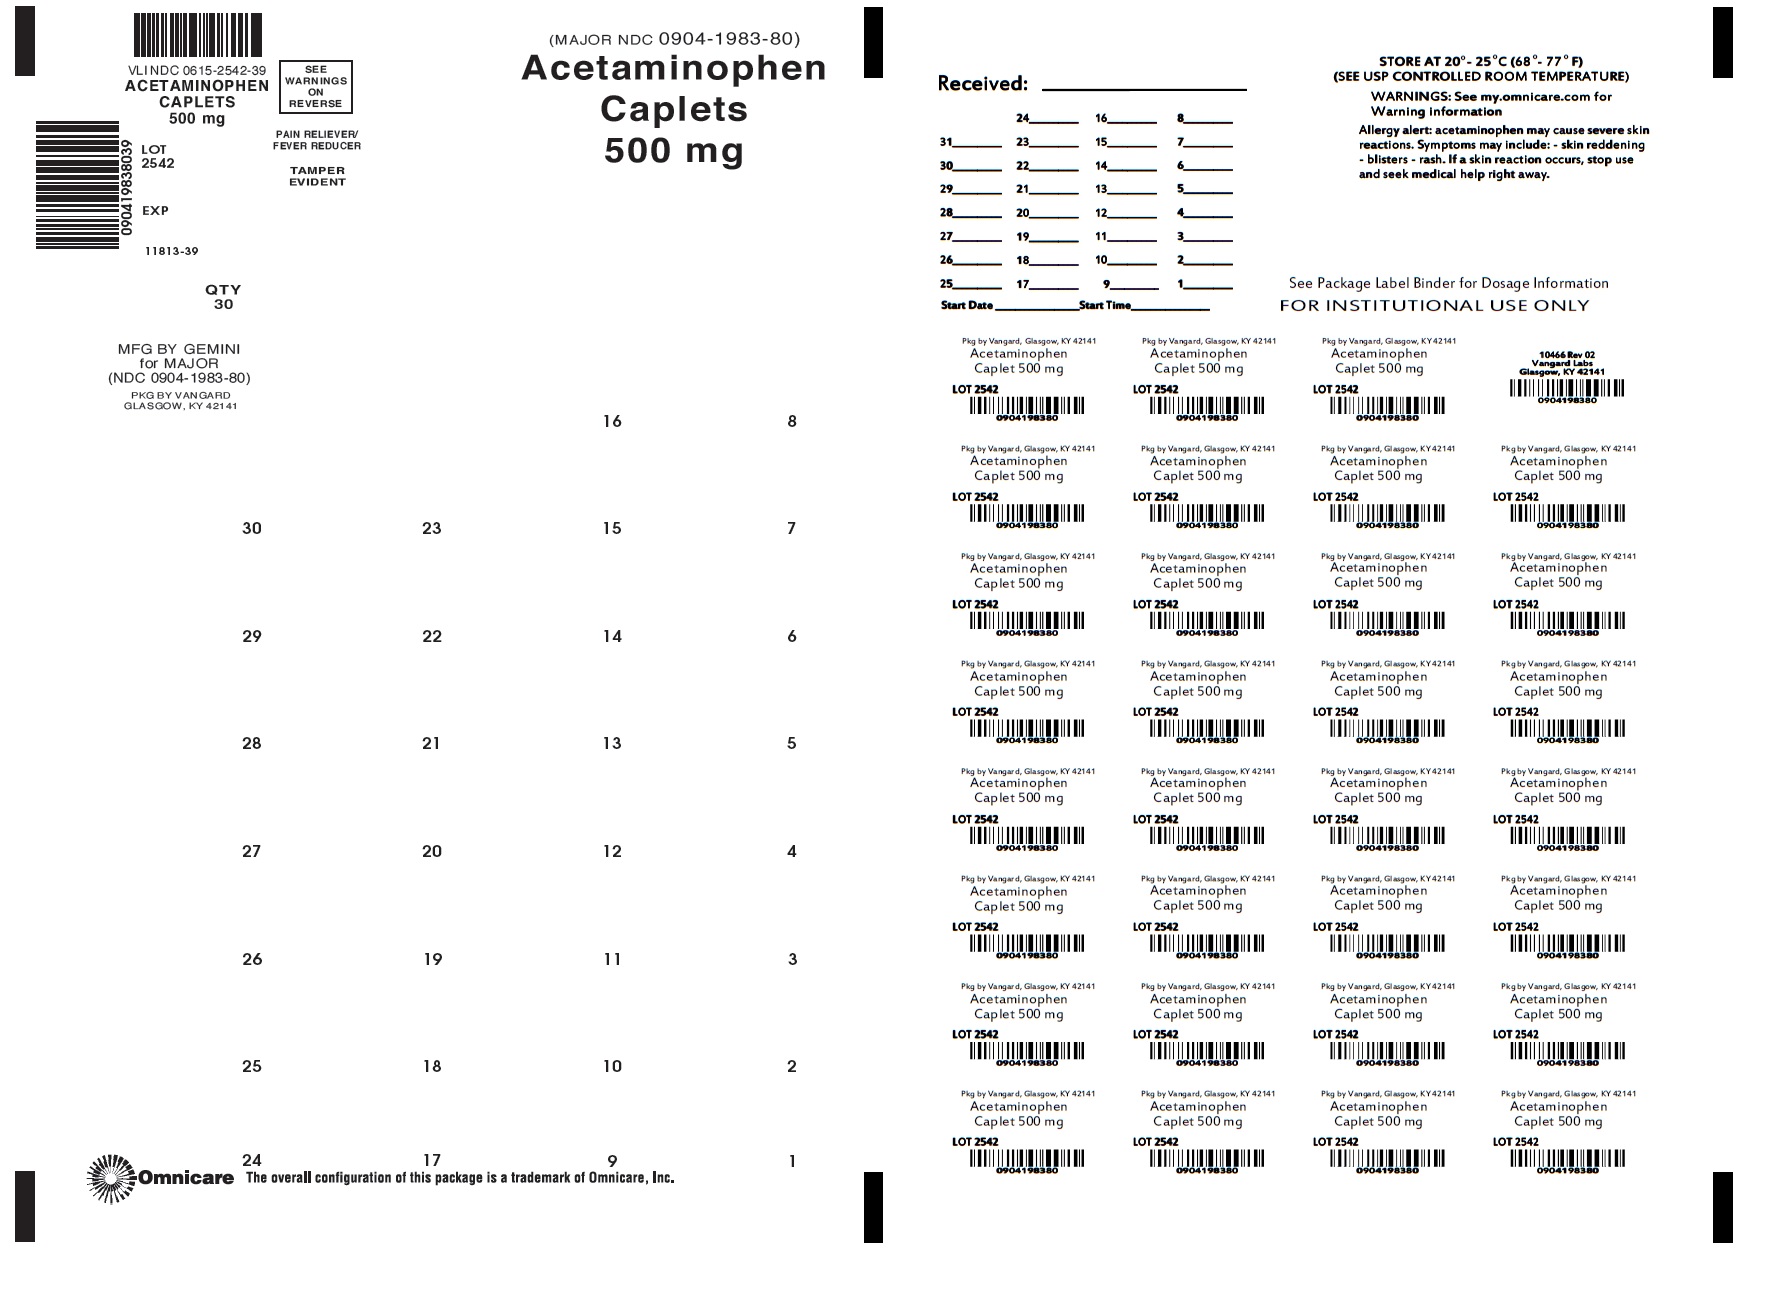 Acetaminophen Caplet 500mg bingo card label